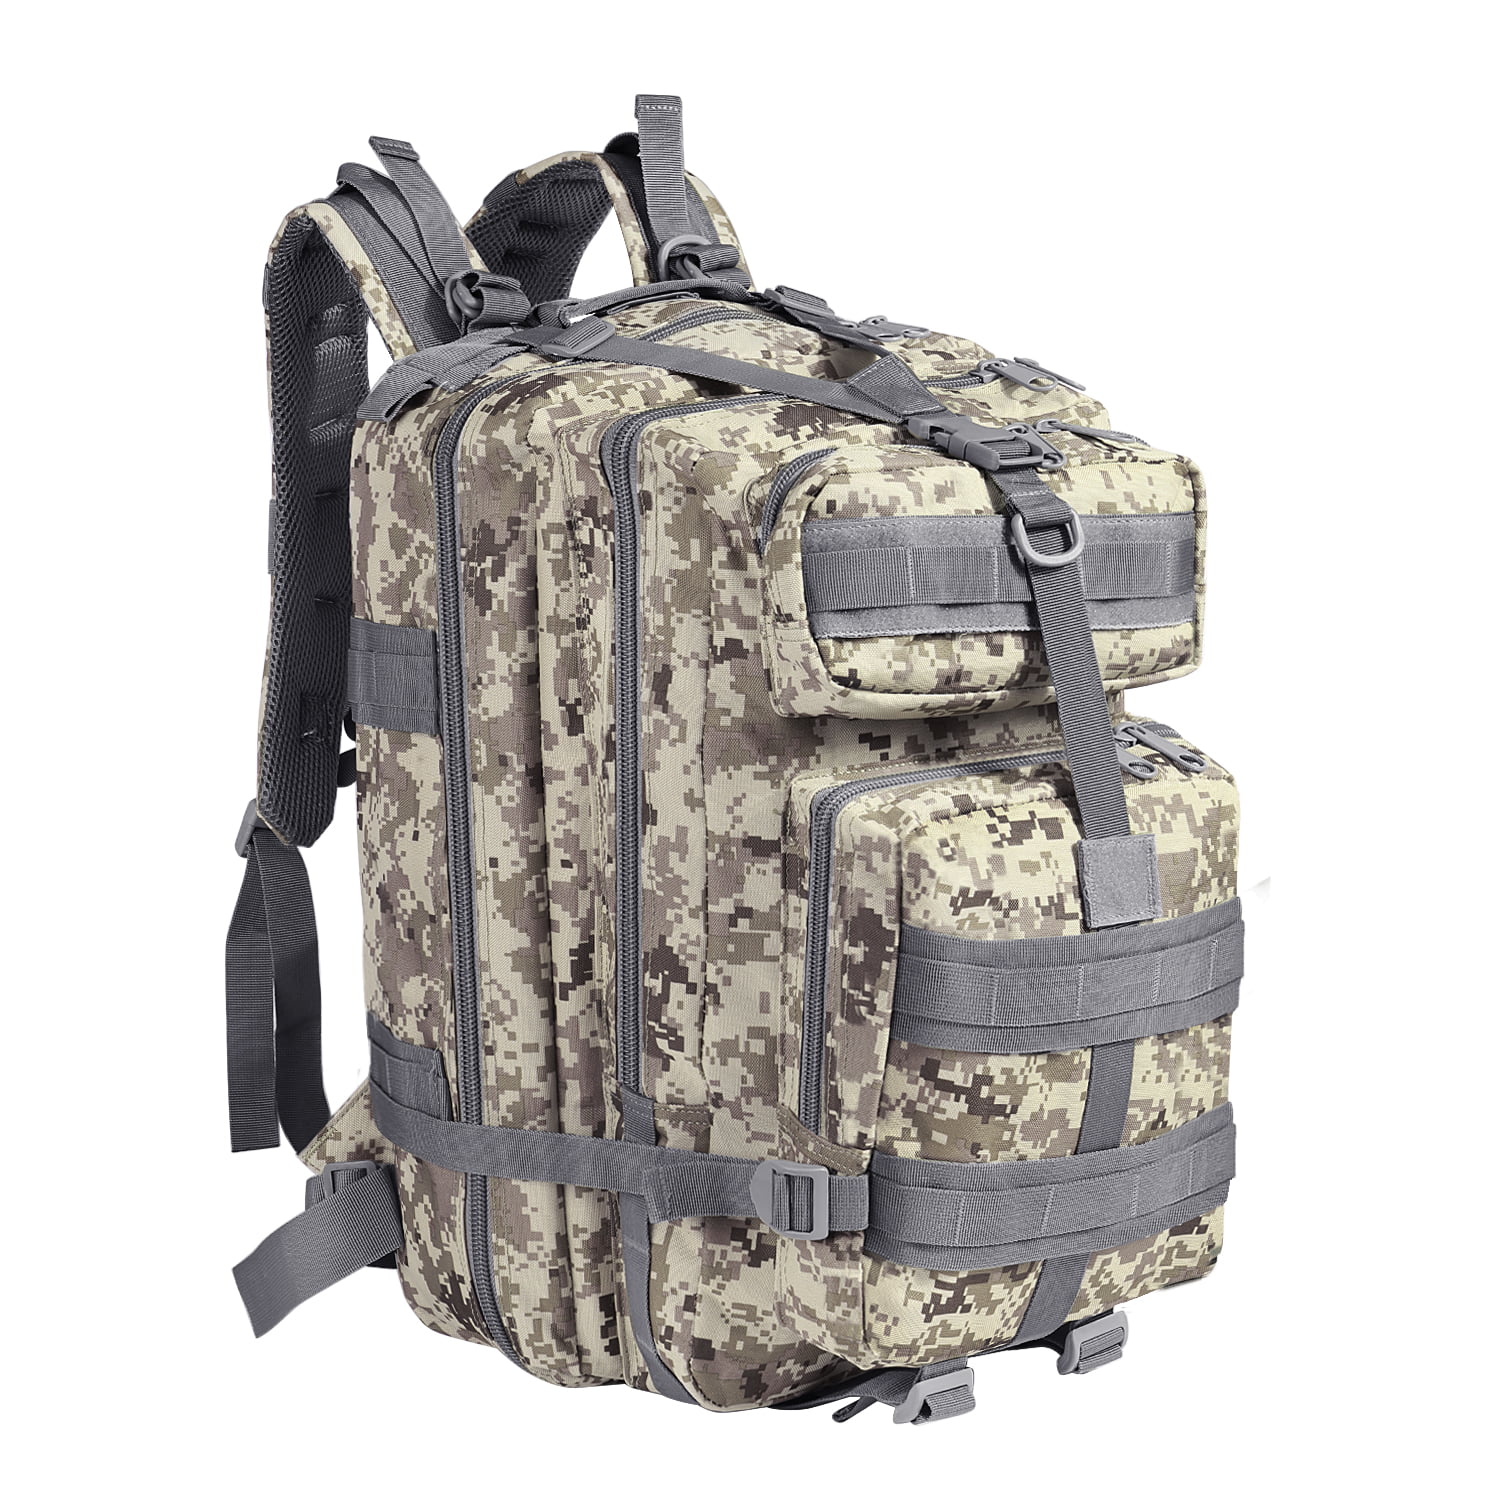 11" Sling Digital Camo TACTICAL BACKPACK DAY PACK Bug Out Shoulder Hiking Bag